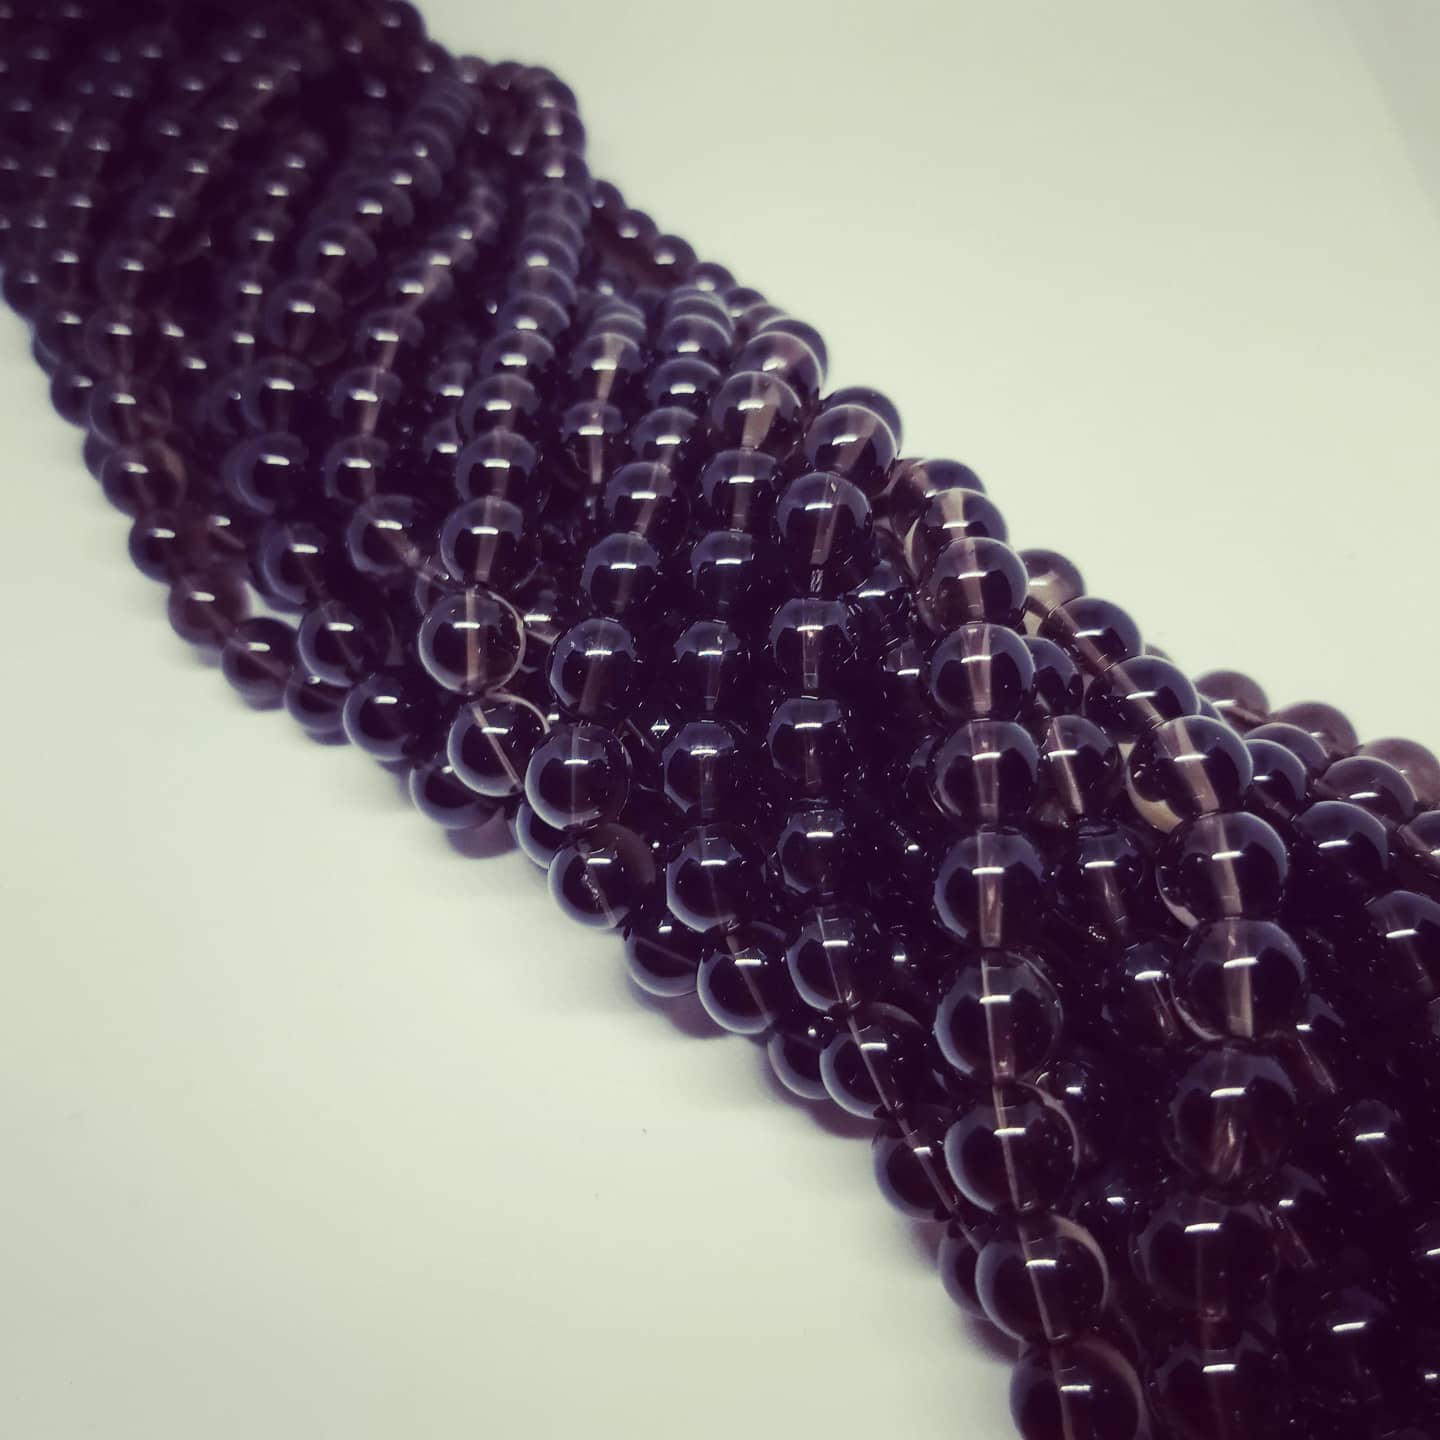 Smoky Quartz Beads (10mm)